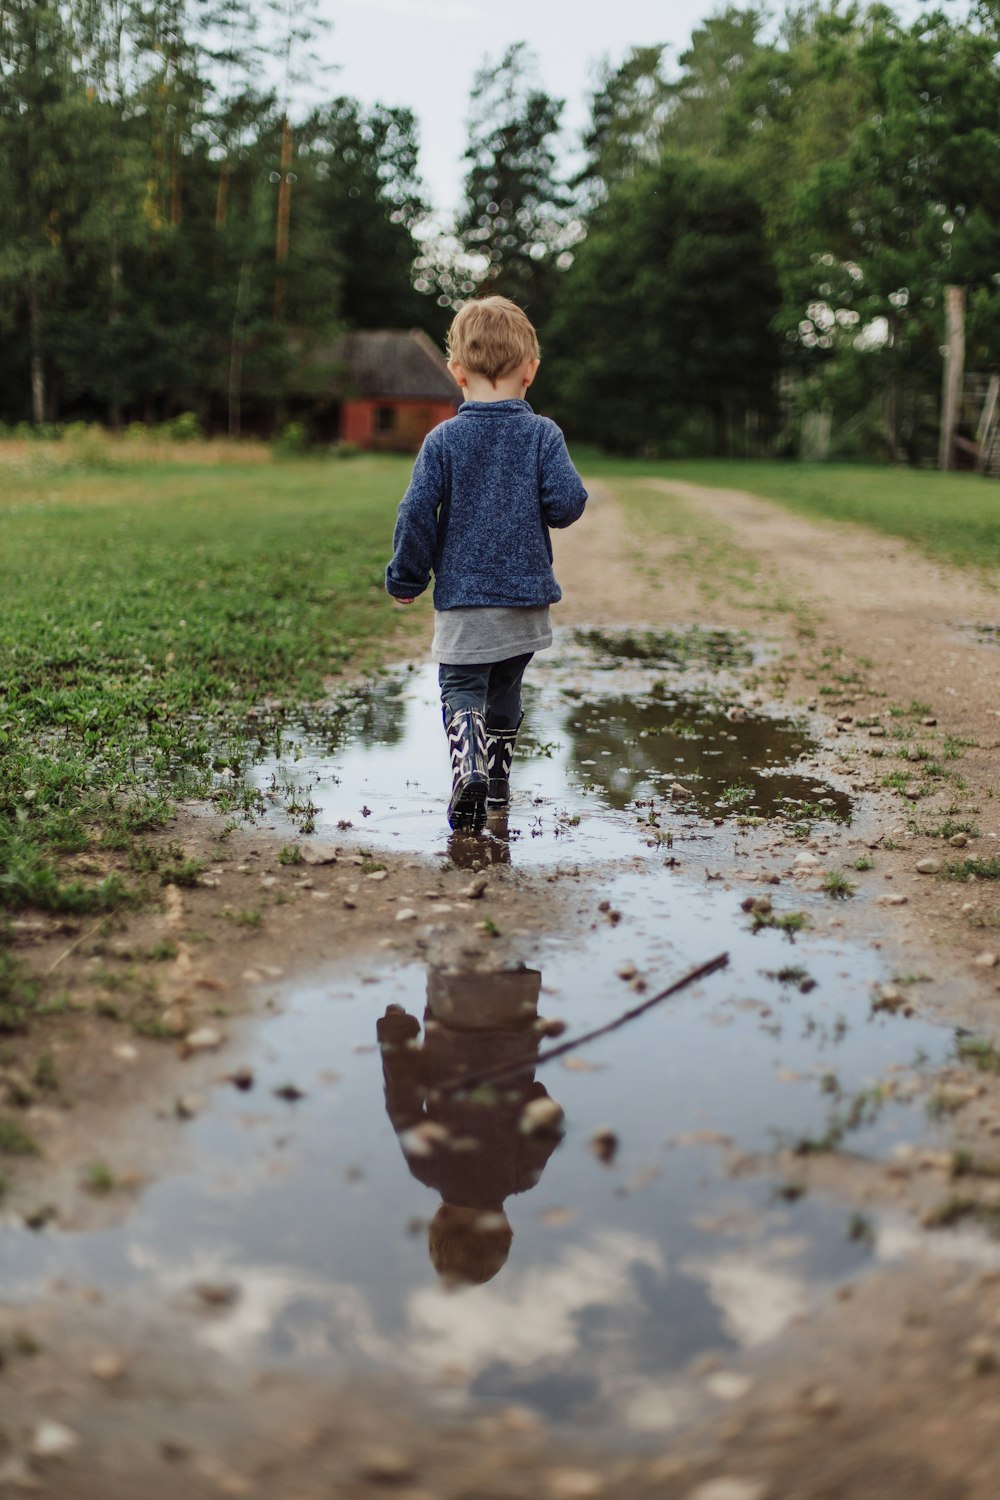 Camminata del bambino sul campo bagnato durante il giorno